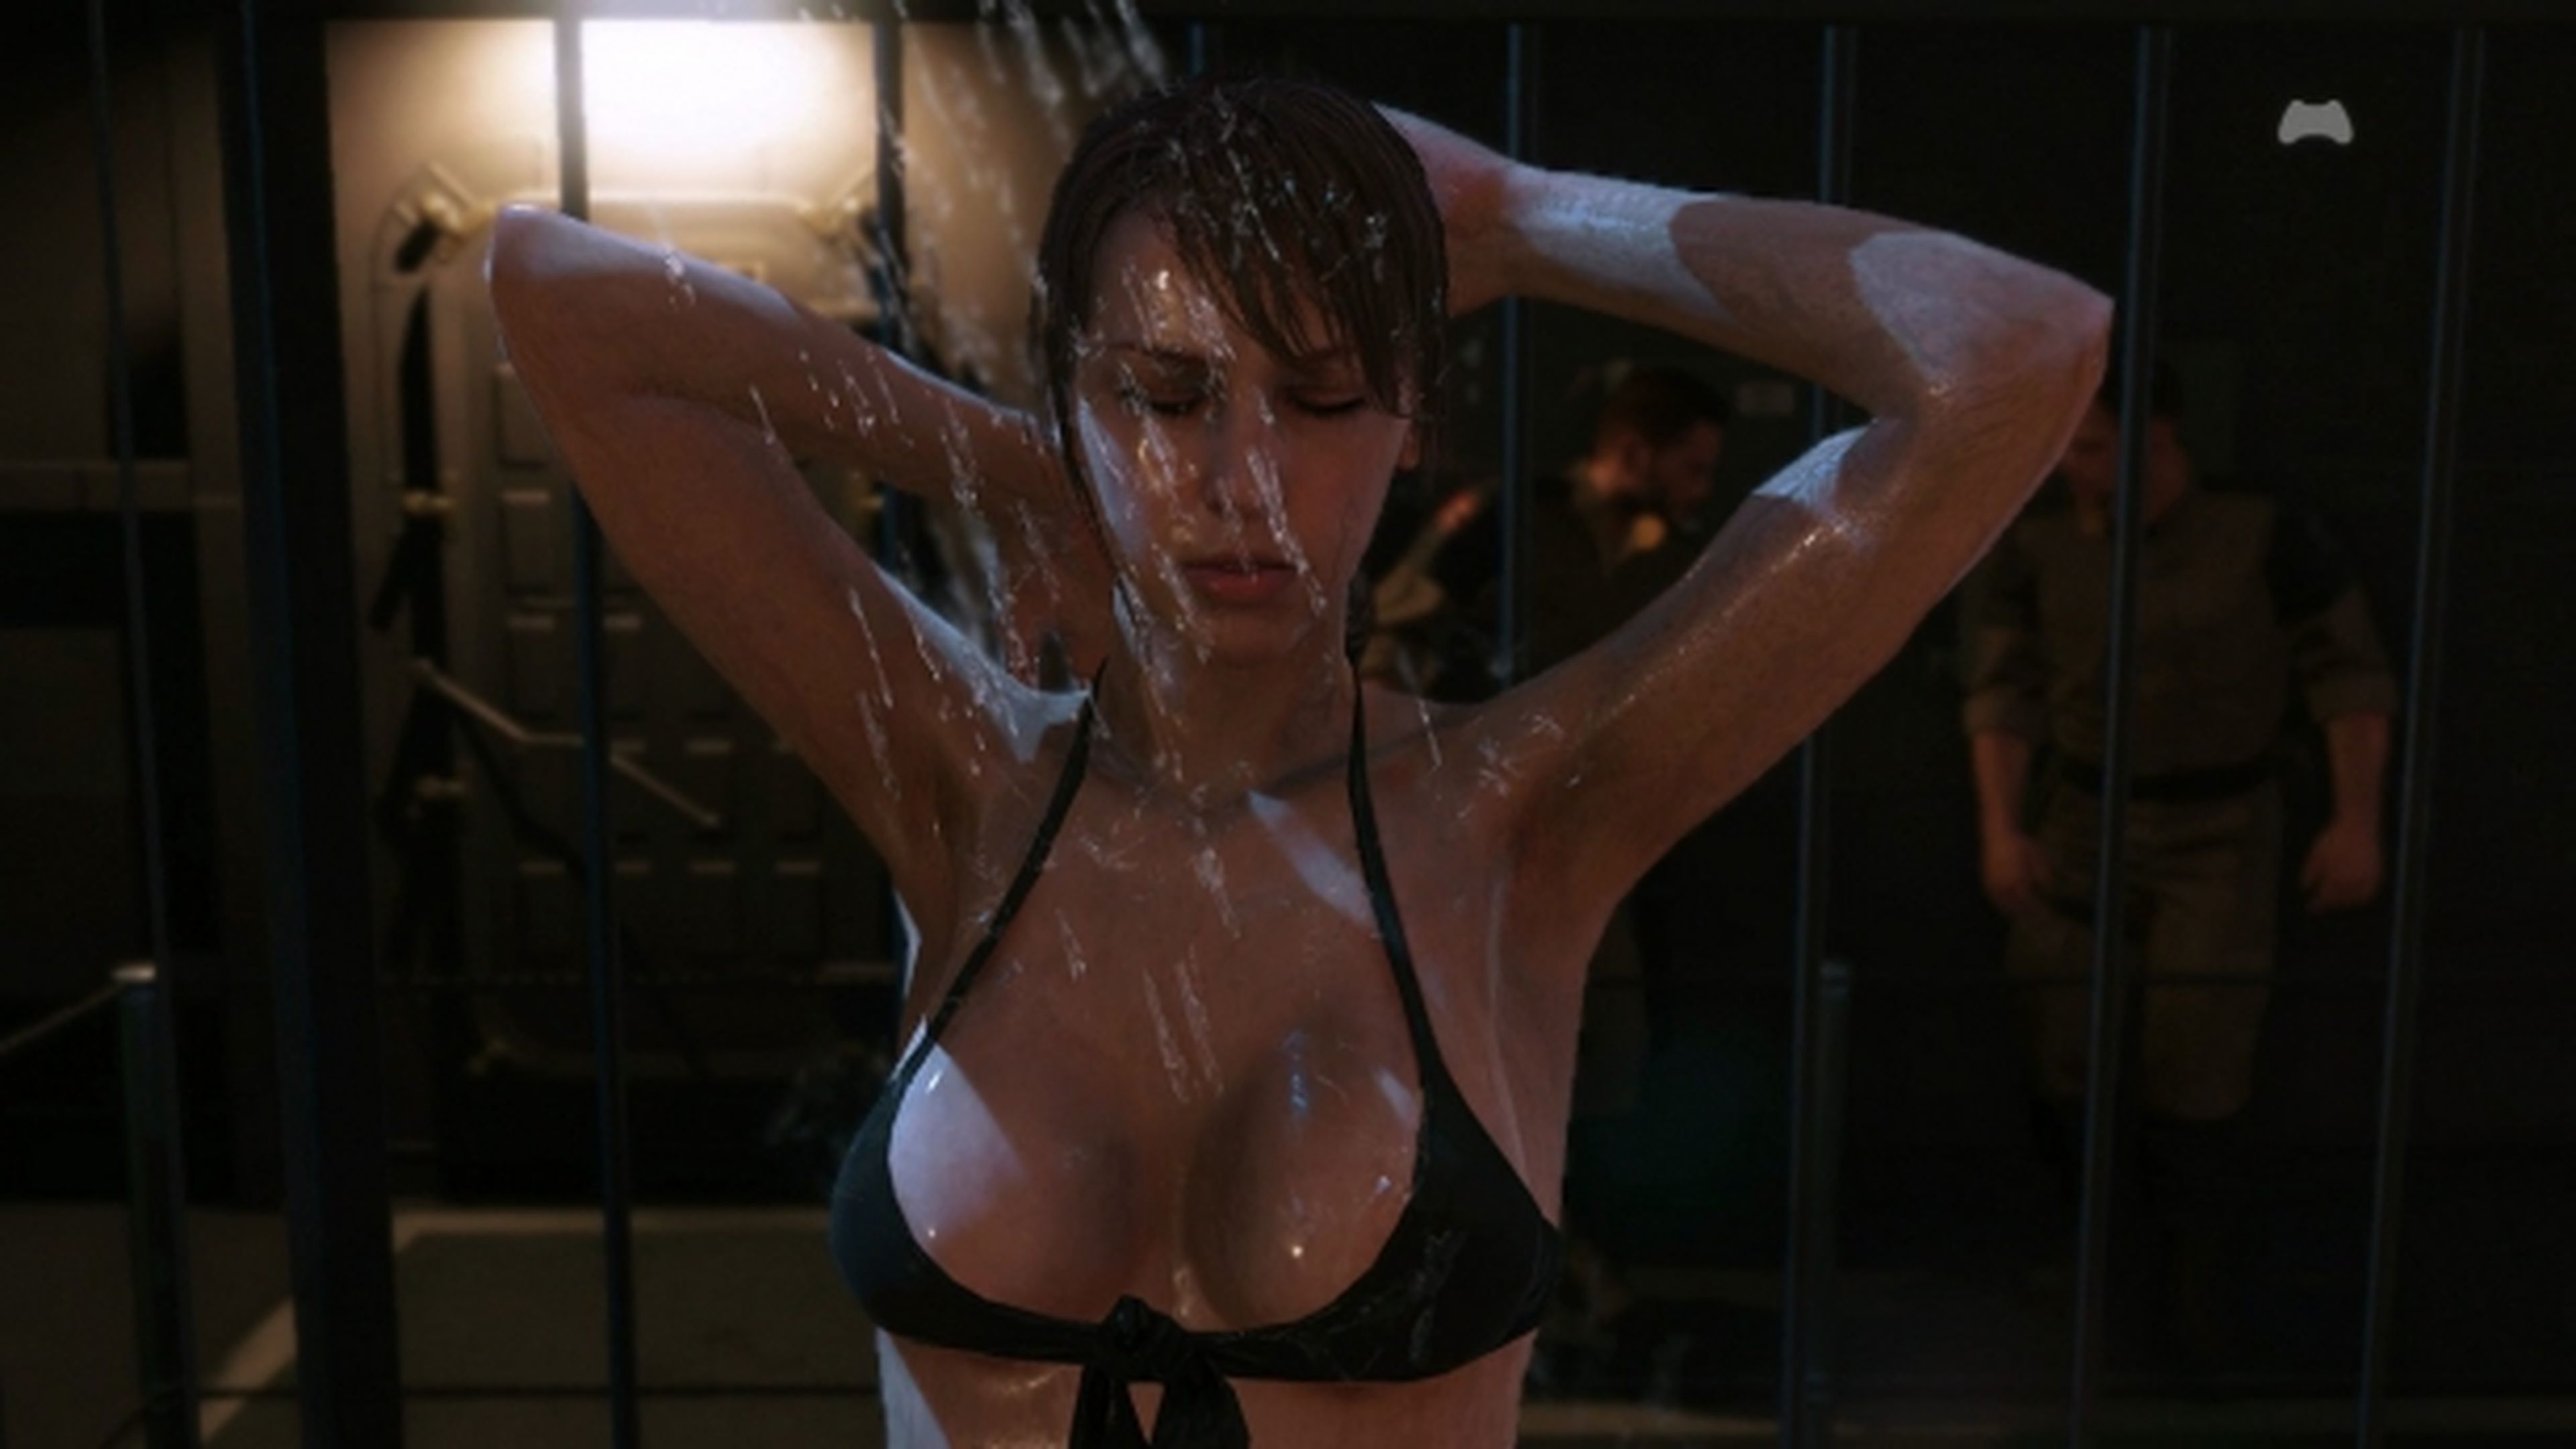 Metal Gear Solid V esconde una escena secreta con Quiet en la ducha